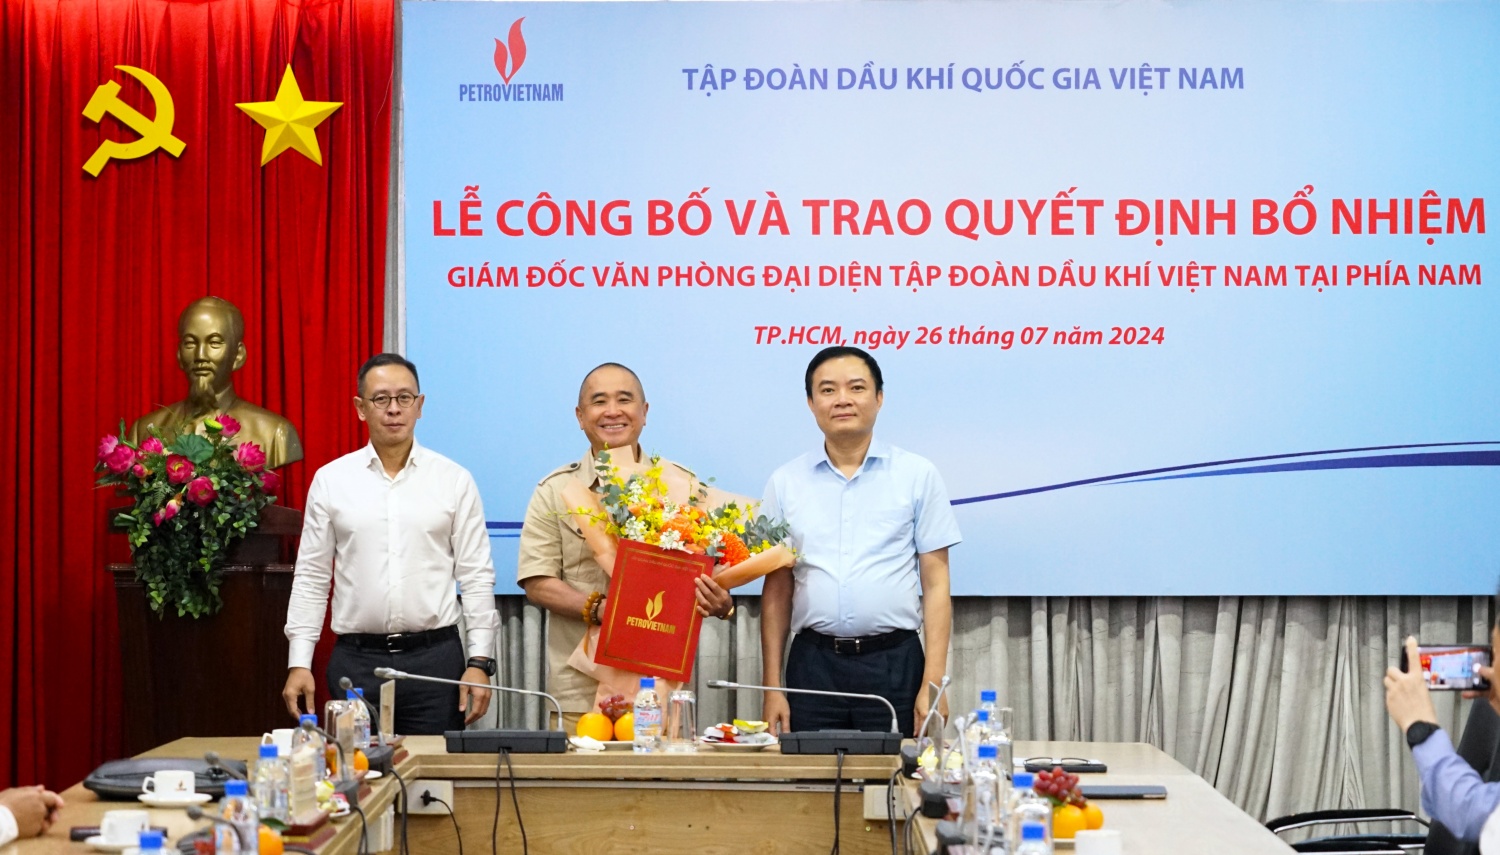 [PetroTimesTV] Tập đoàn Dầu khí Việt Nam bổ nhiệm Giám đốc Văn phòng đại diện tại phía Nam